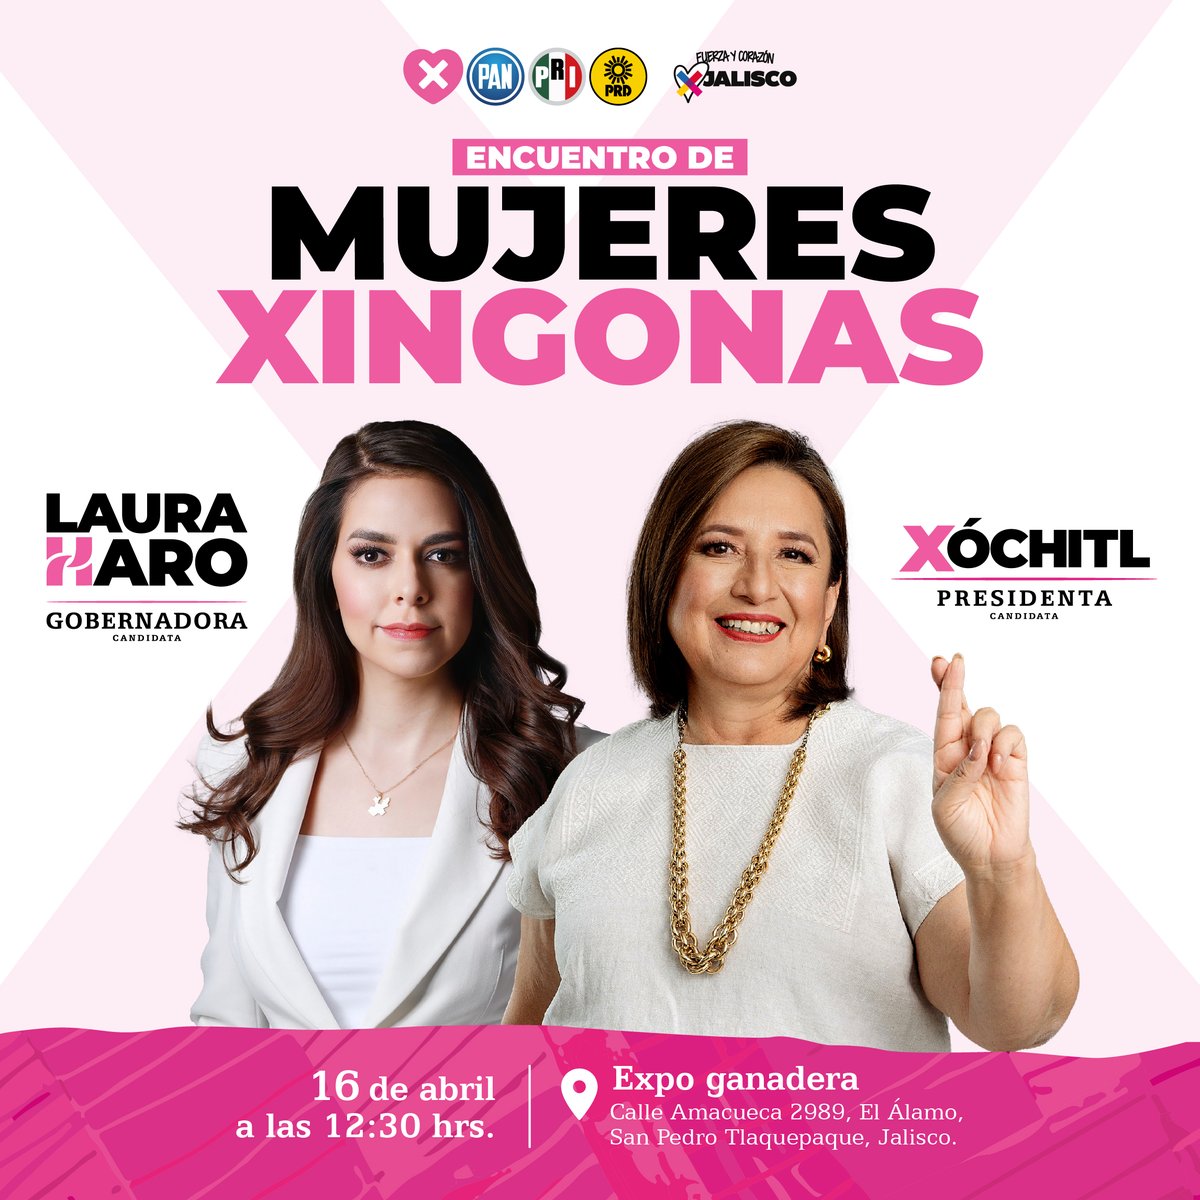 Muy contenta de acompañar el día de hoy a la mujer que será la primera presidenta de México y transformará la realidad de millones de familias, @XochitlGalvez. Nos vemos en la Expo Ganadera para el encuentro de #MujeresXingonas. #PorUnJaliscoSeguro #LauraGobernadora